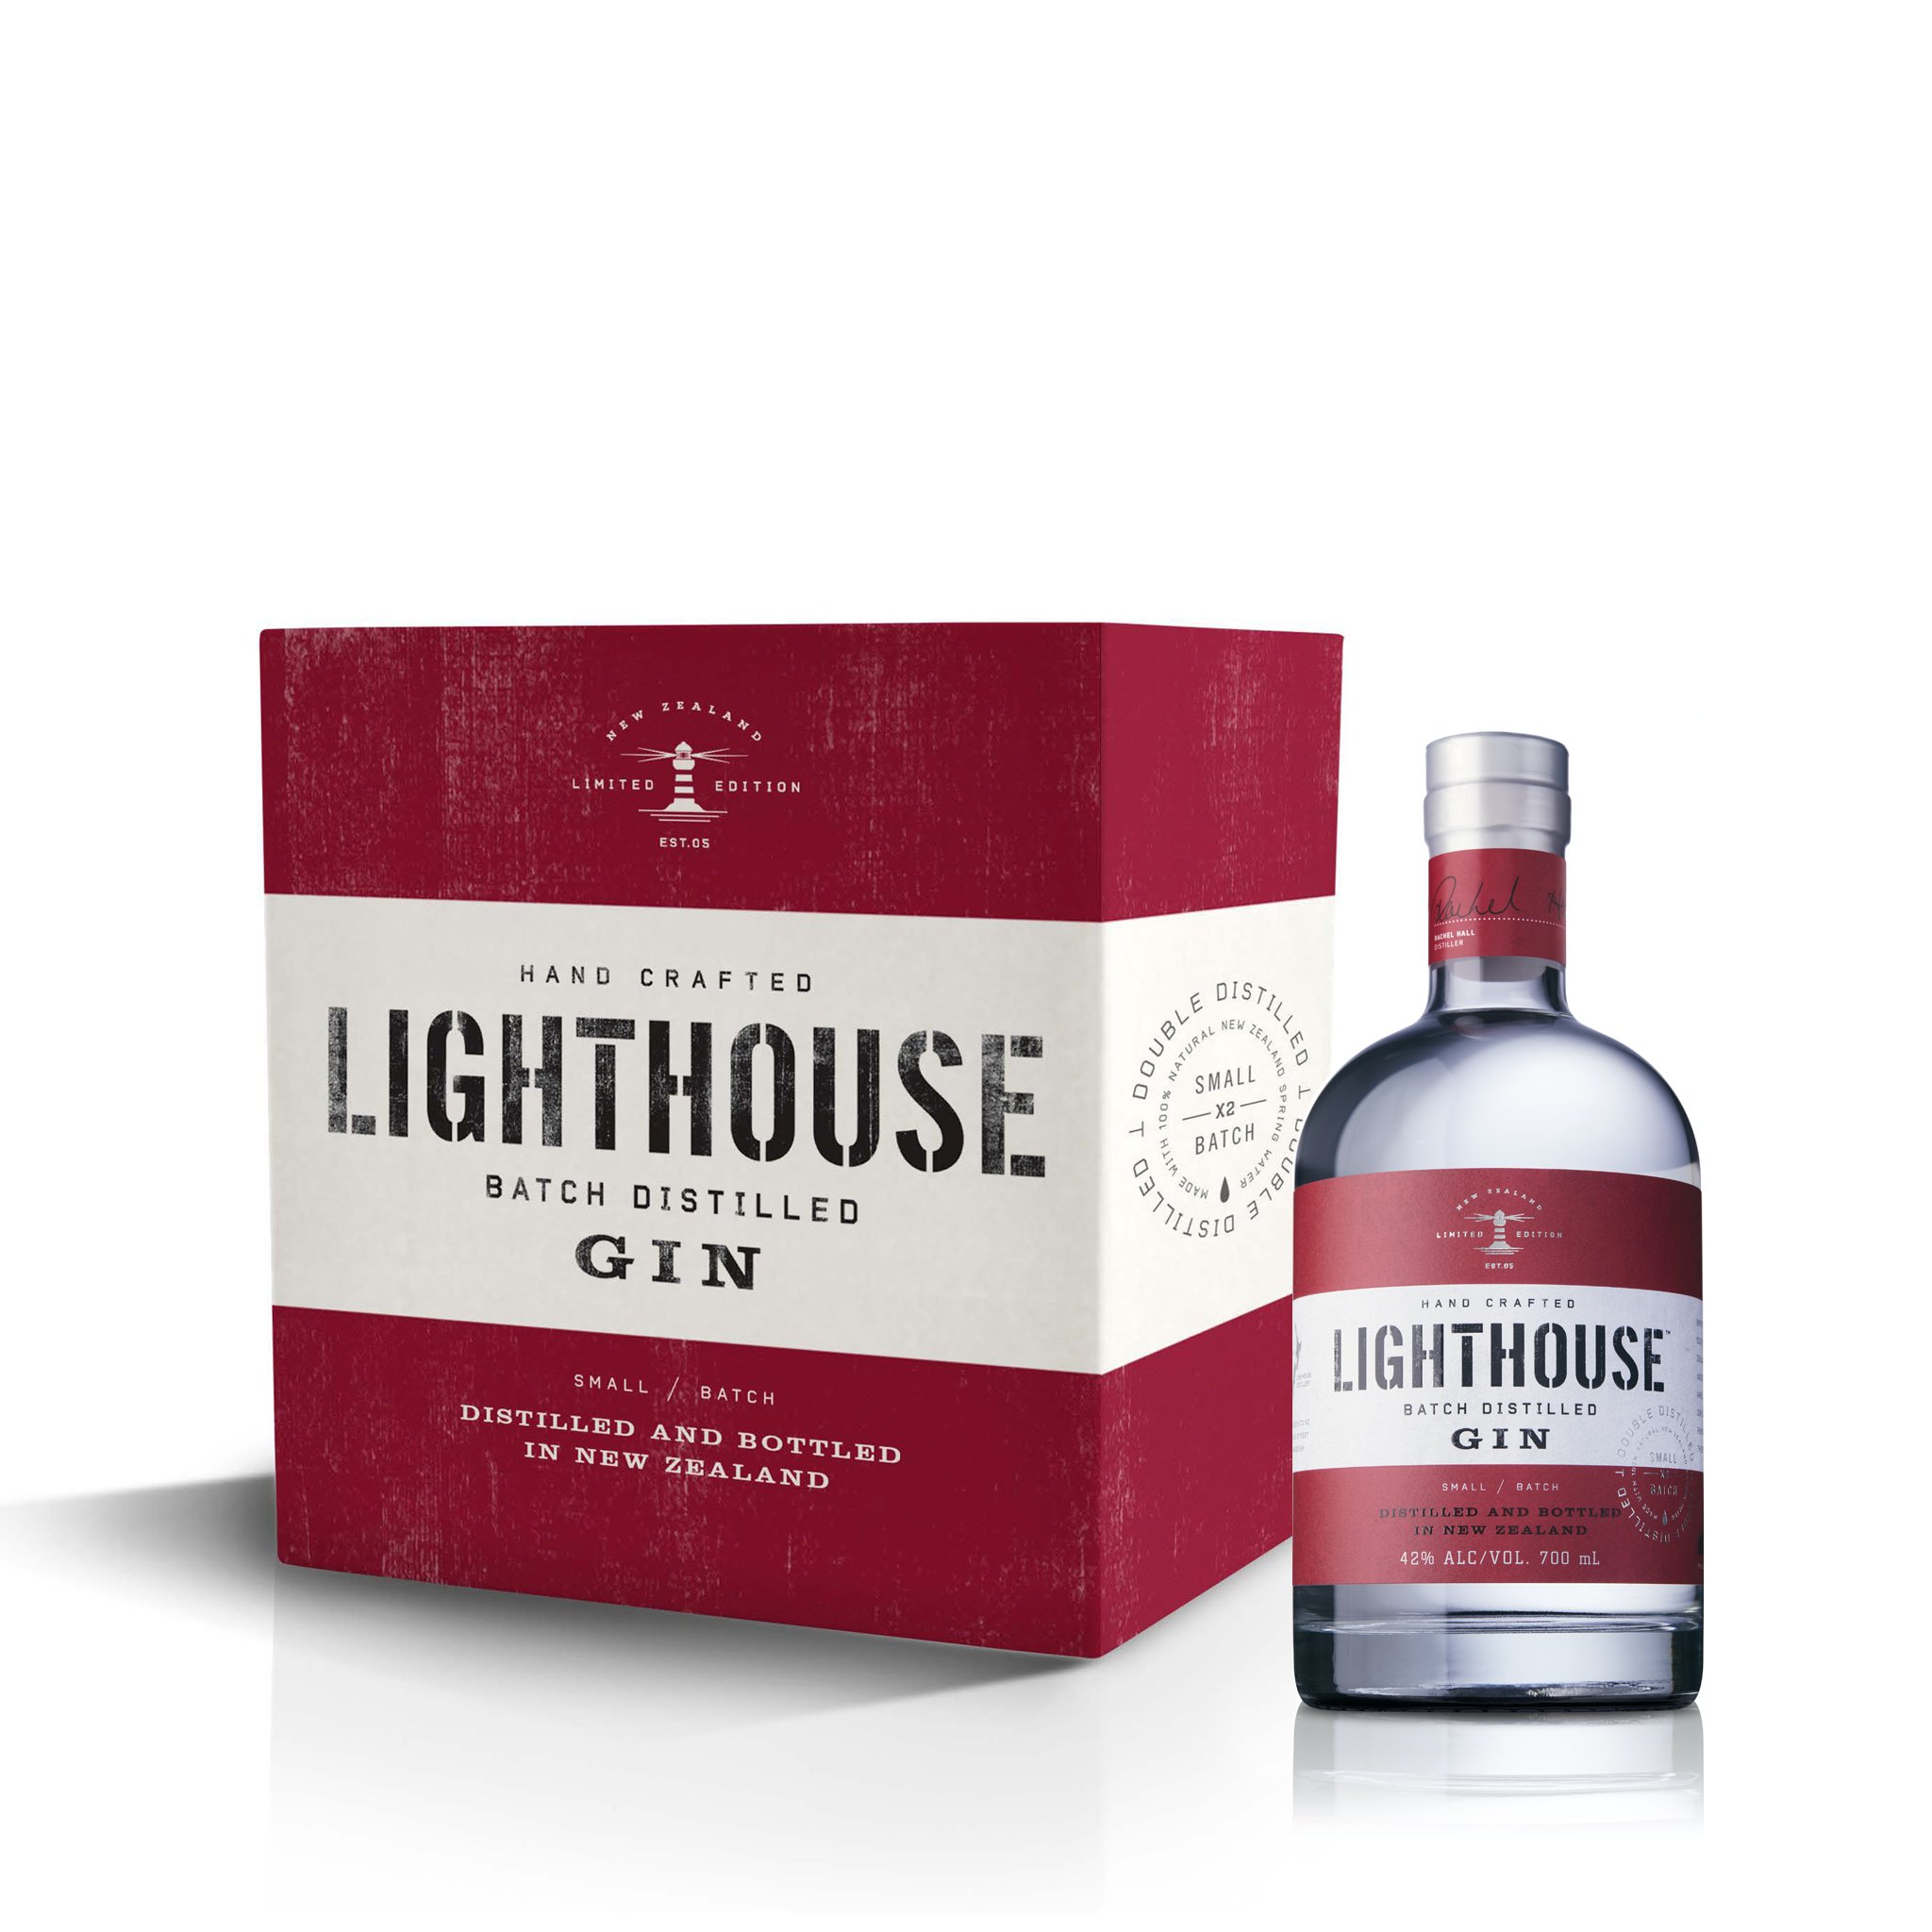 Lighthouse Gin 6 bottles of the 700ml